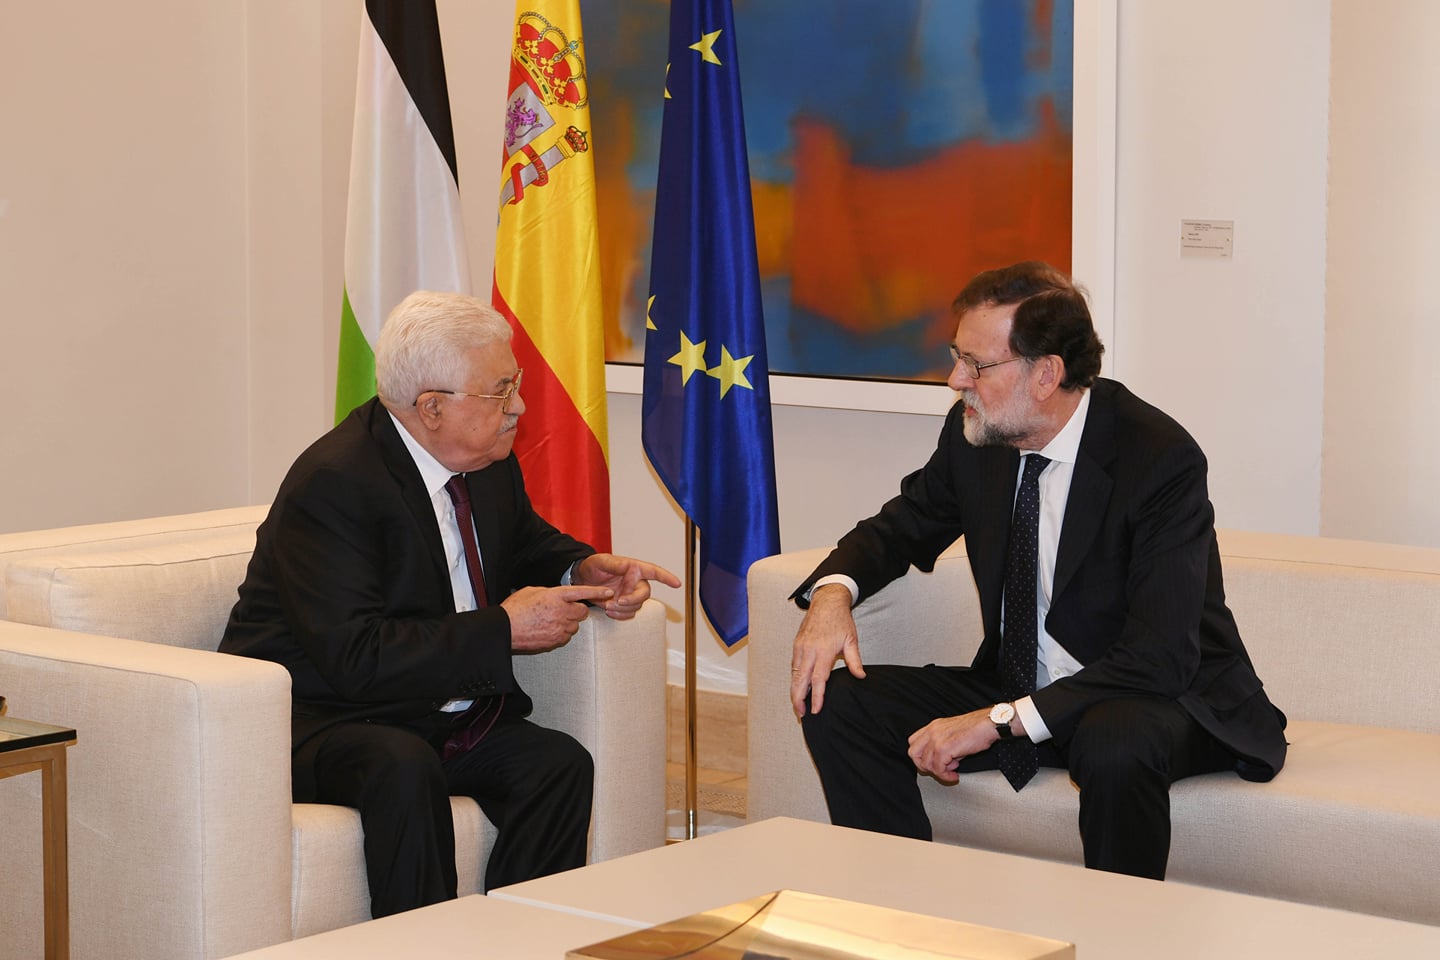 إسبانيا تأمل بـ”اعتراف أوروبي” بالدولة الفلسطينية